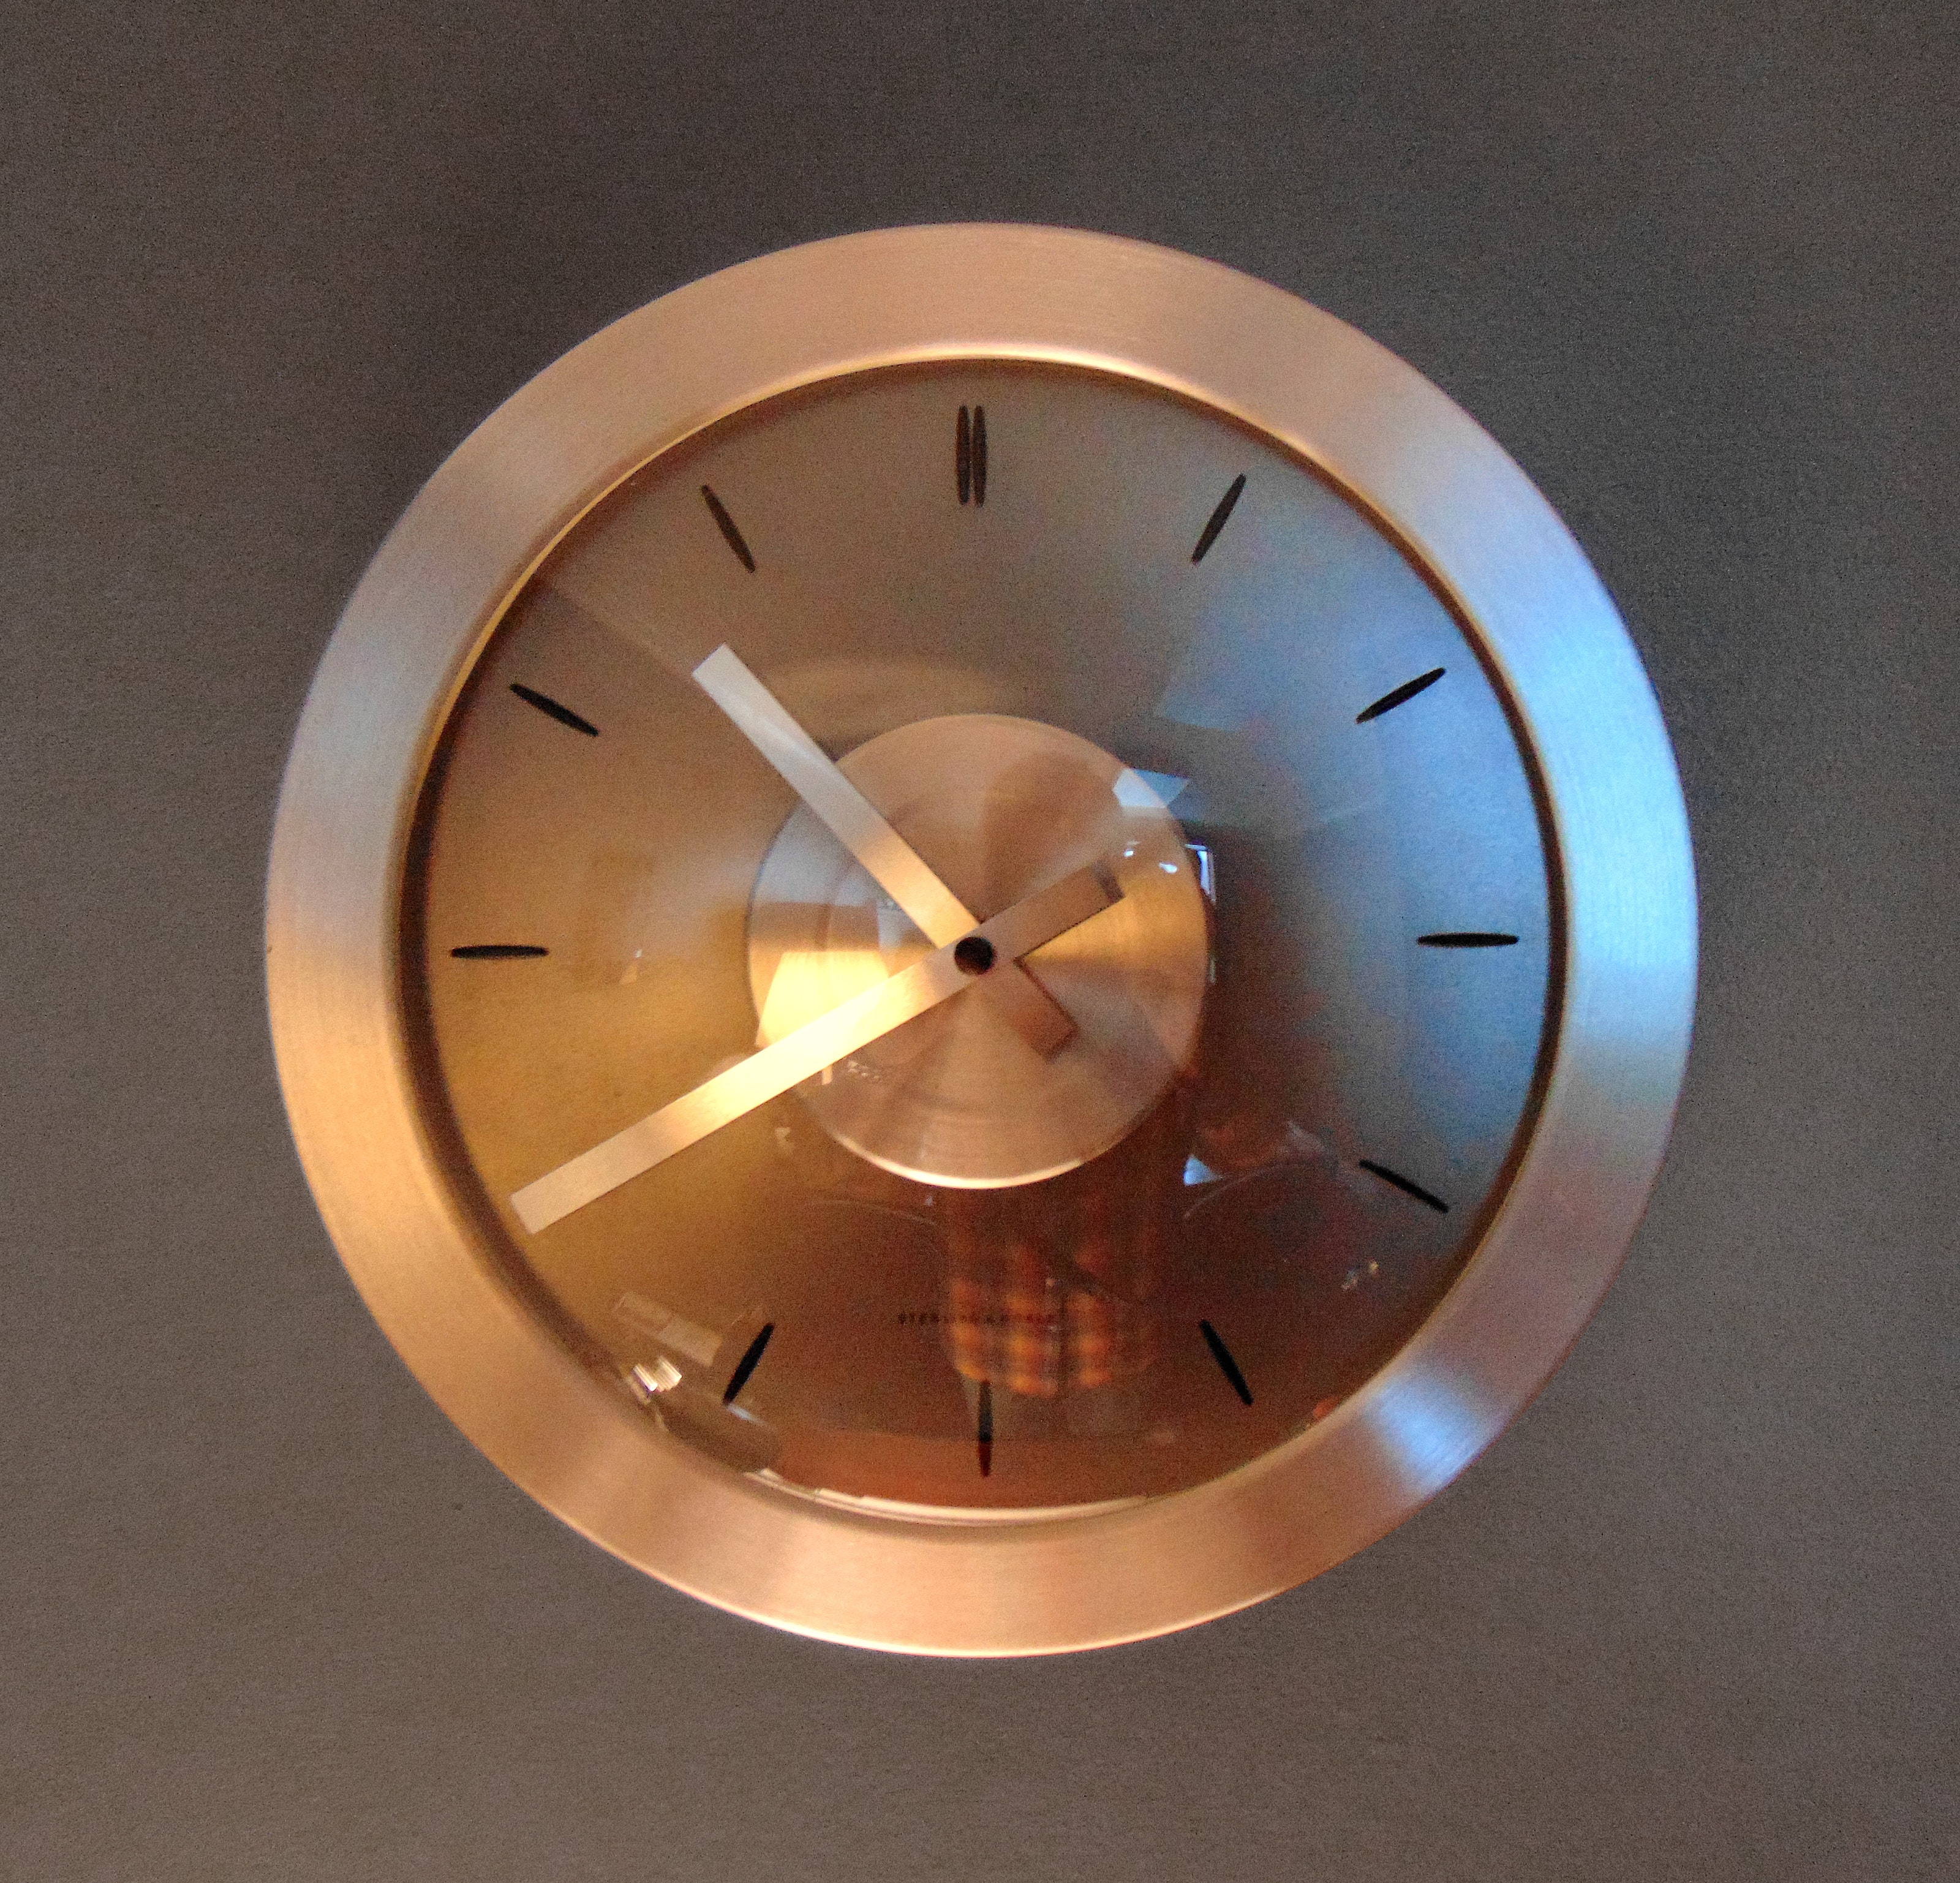 Round bronze analog wall clock photo